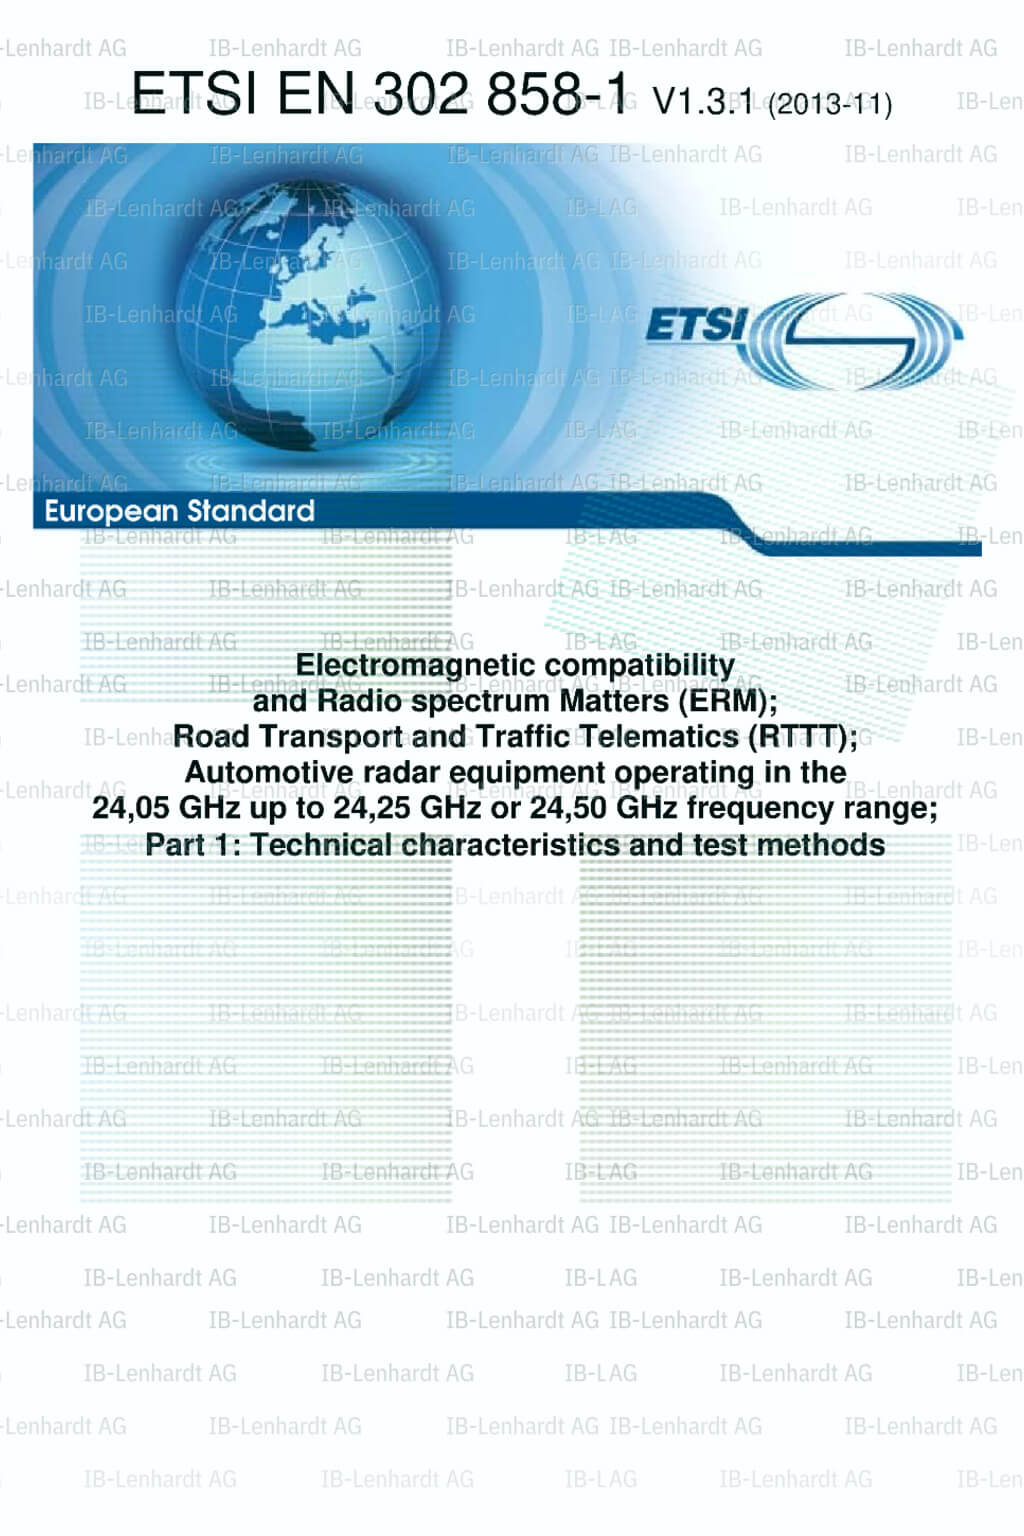 ETSI EN 302 858-1 V1.3.1 